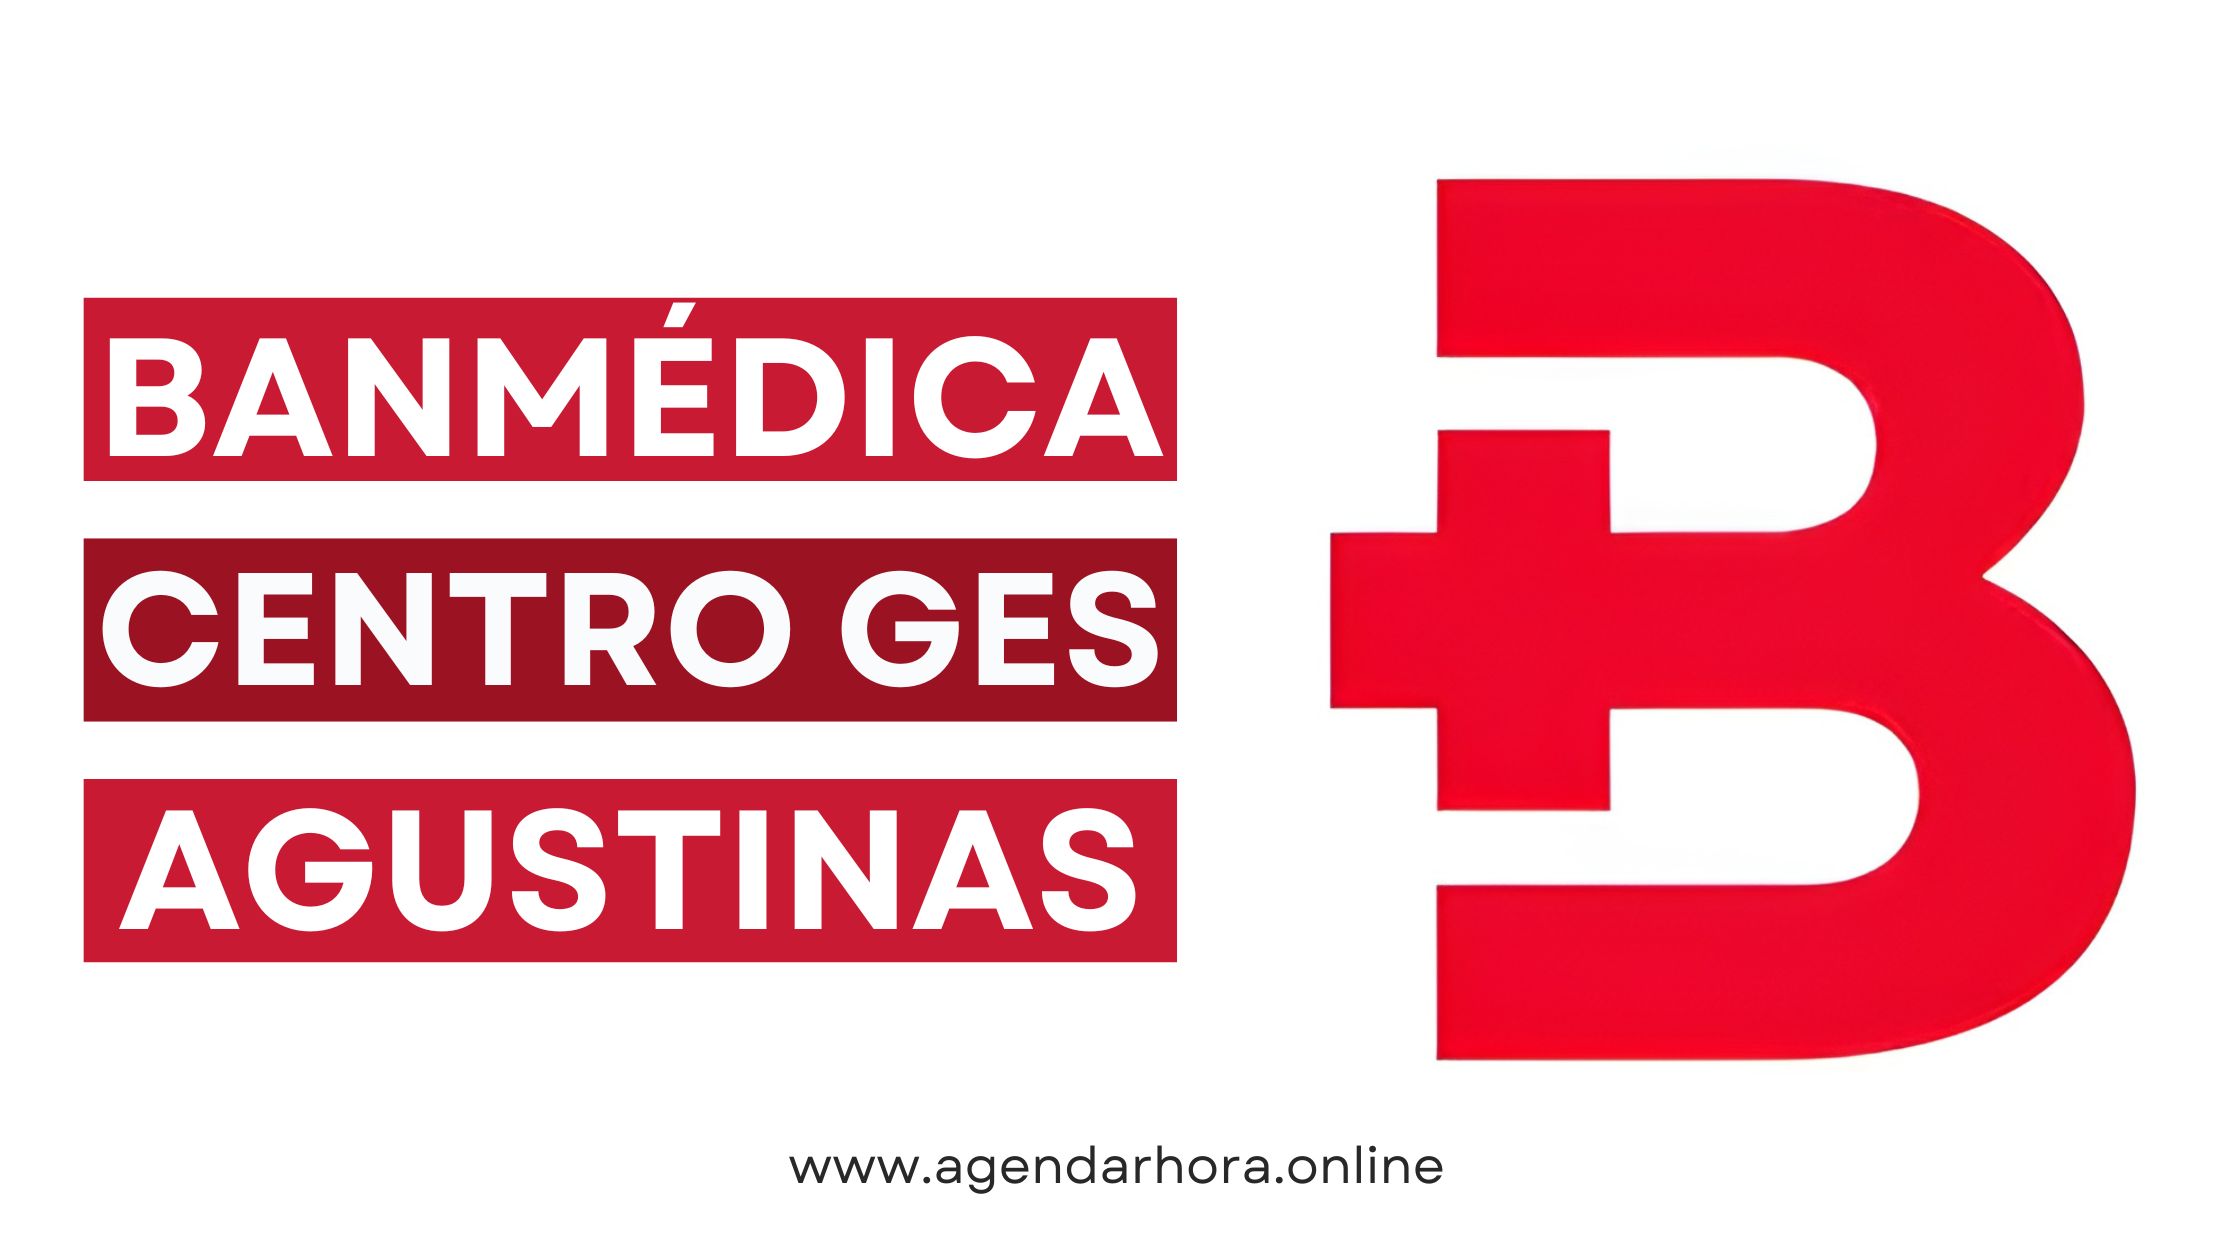 Banmédica Centro GES Agustinas